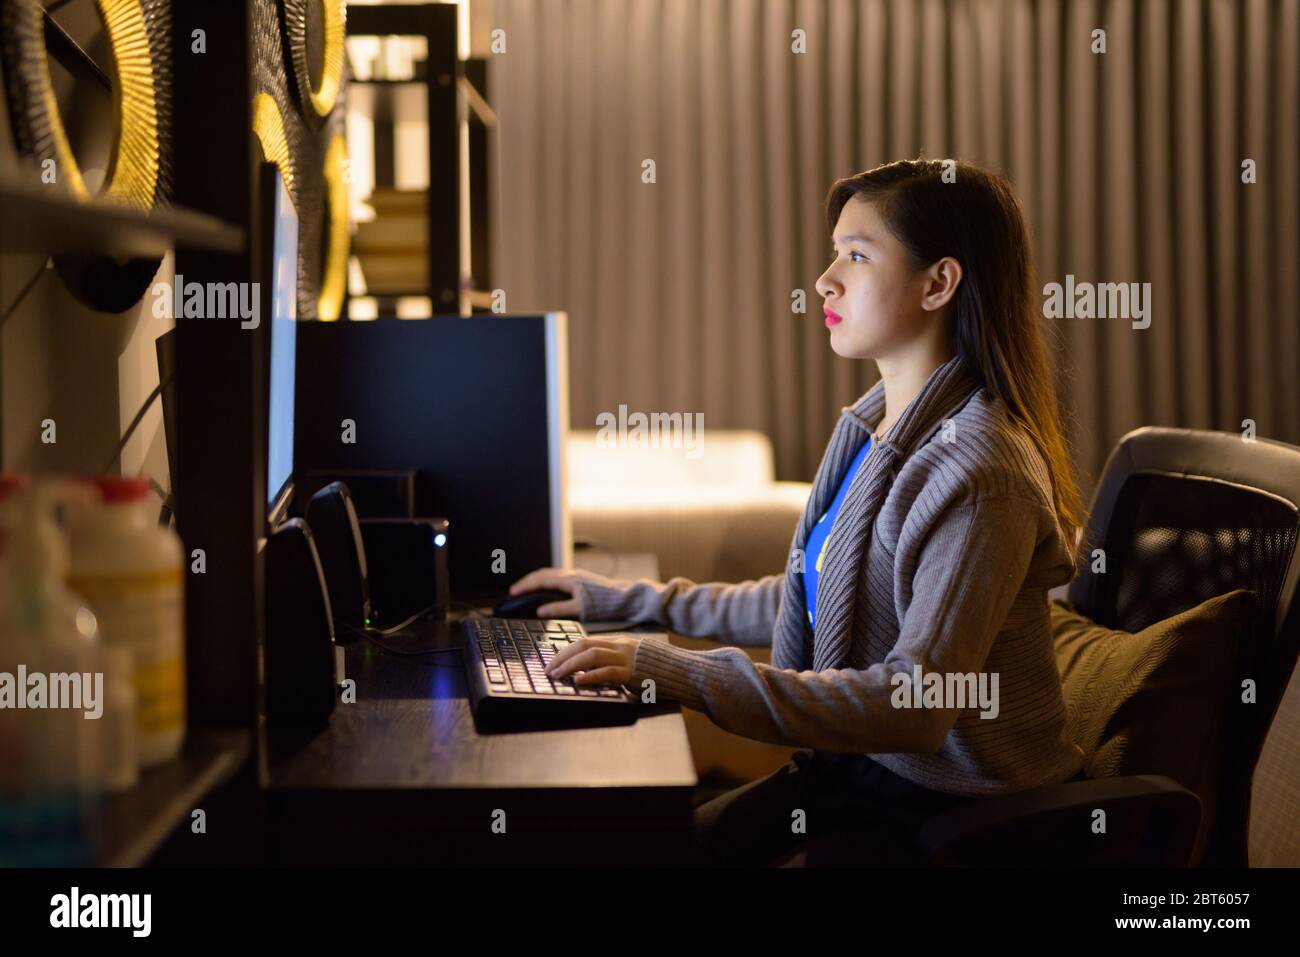 Jeune femme asiatique travaillant des heures supplémentaires à la maison tard dans la nuit Banque D'Images